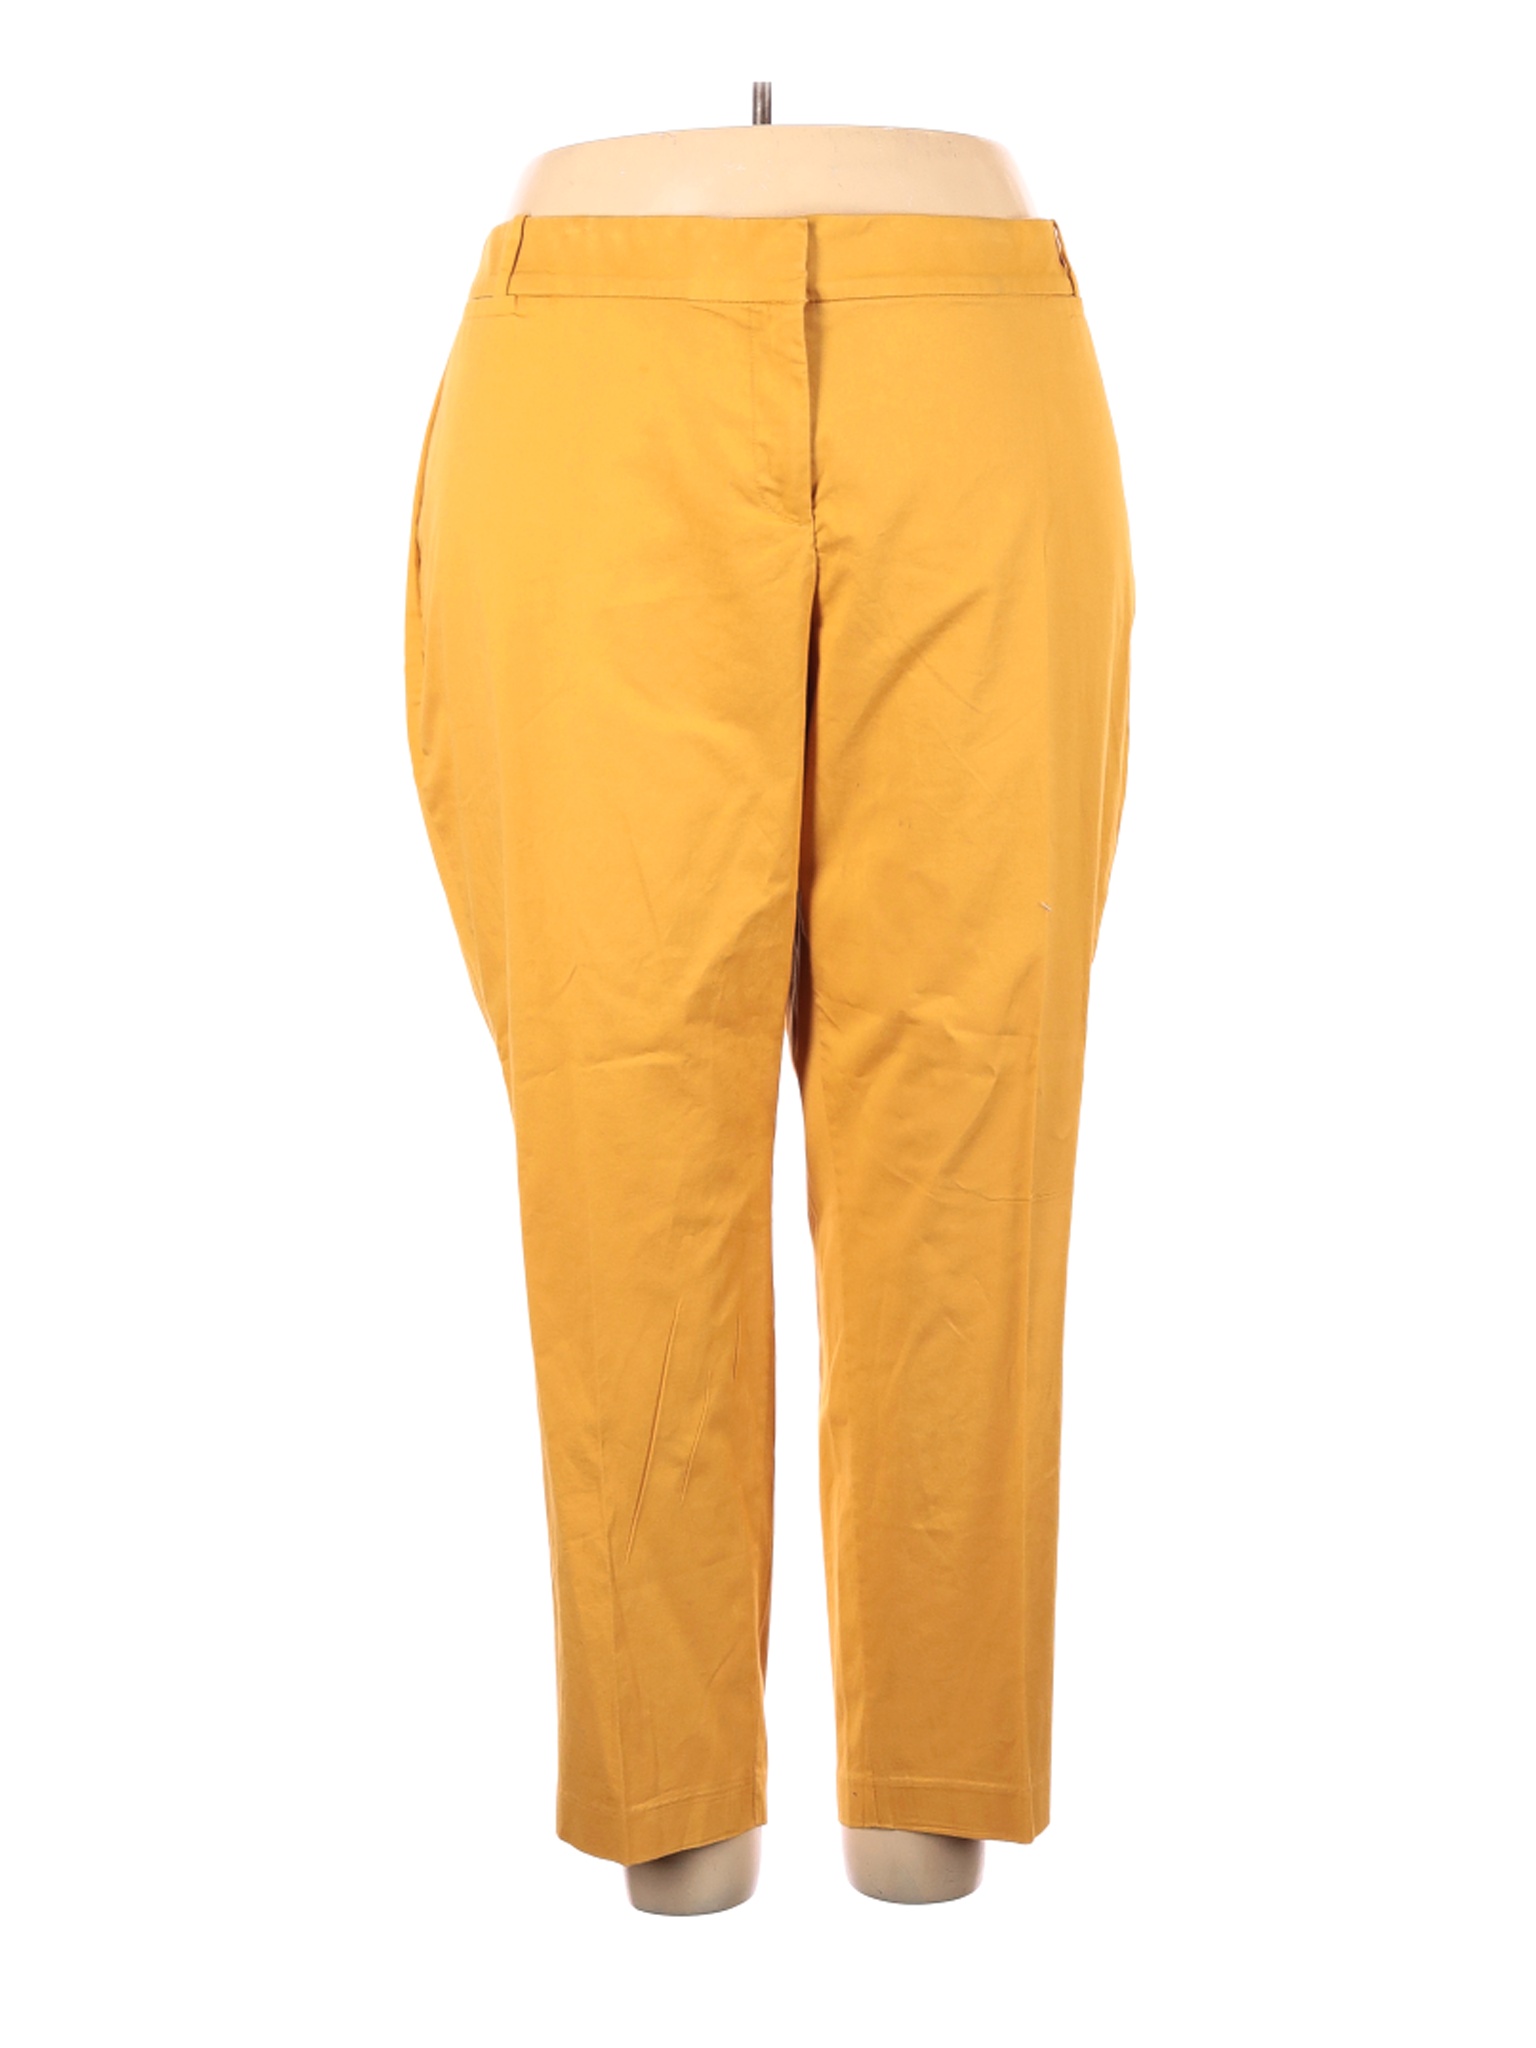 Lane Bryant Women Yellow Casual Pants 24 Plus | eBay